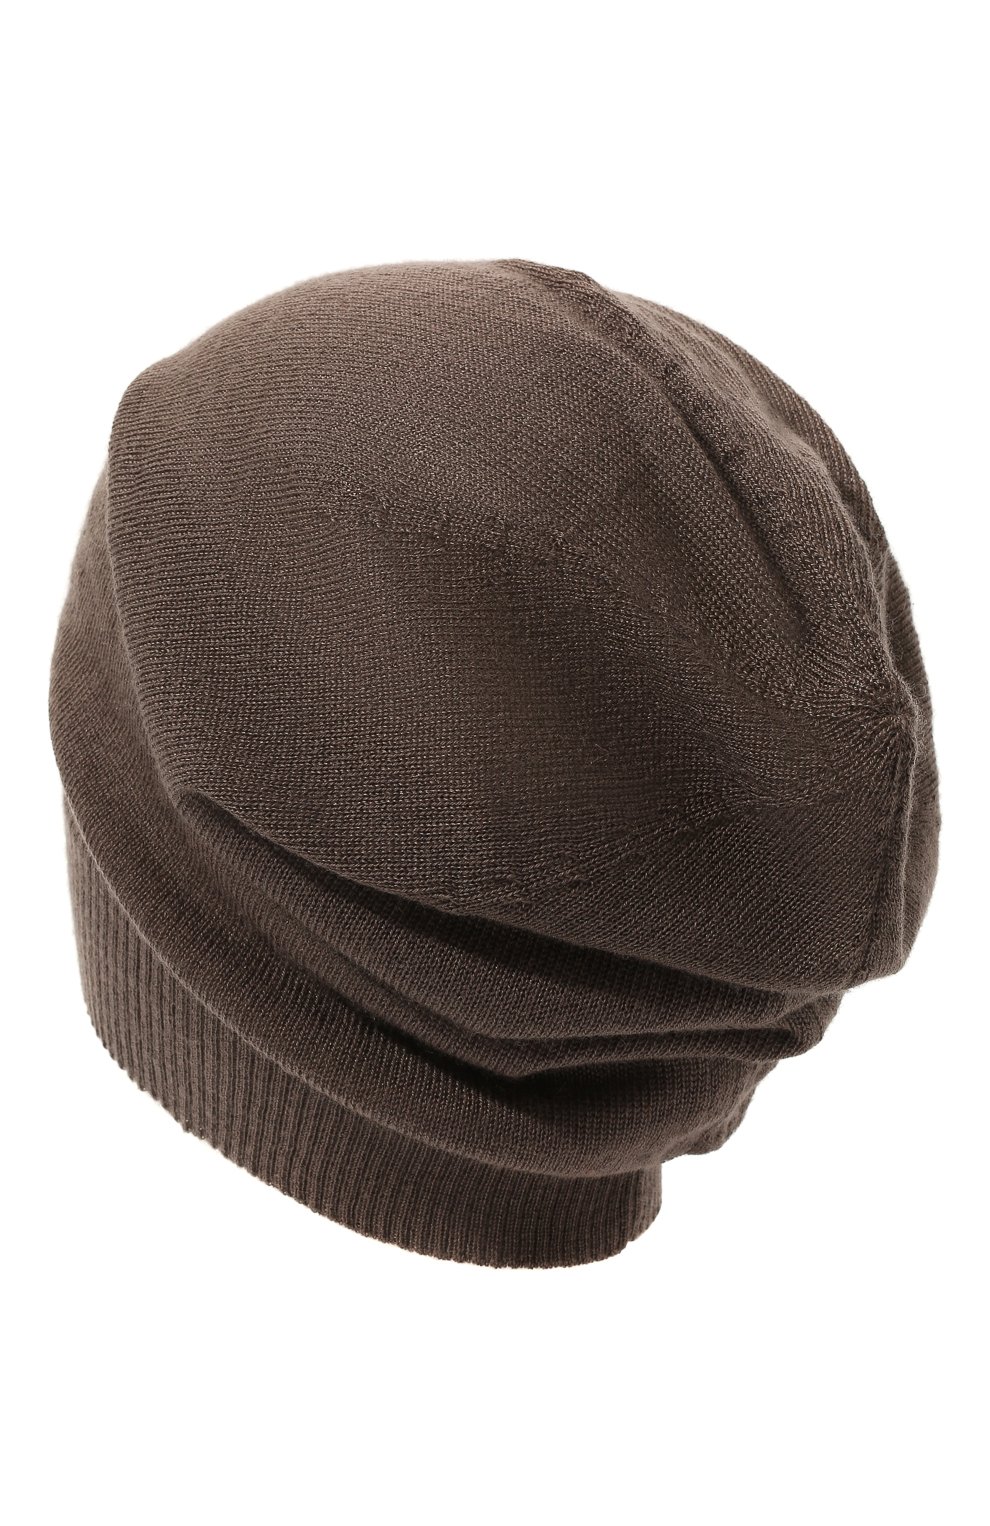 Мужская кашемировая шапка RICK OWENS коричневого цвета, арт. RU02B2493/WS | Фото 2 (Материал: Текстиль, Кашемир, Шерсть; Кросс-КТ: Трикотаж)